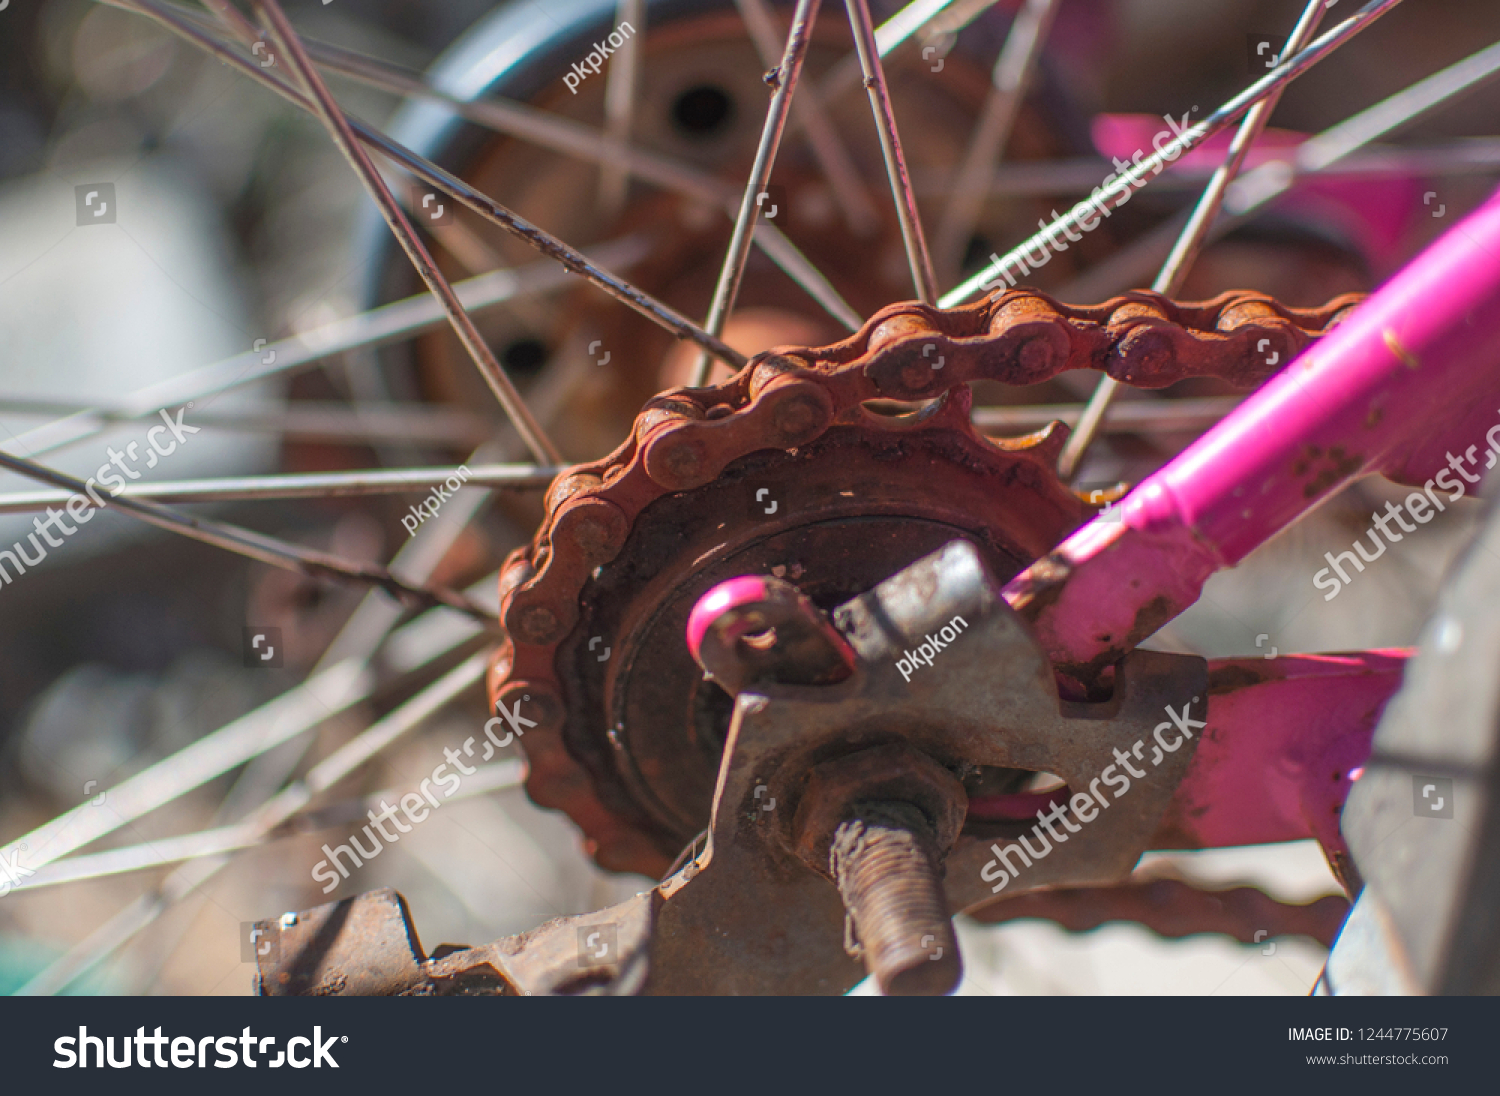 pink bike chain